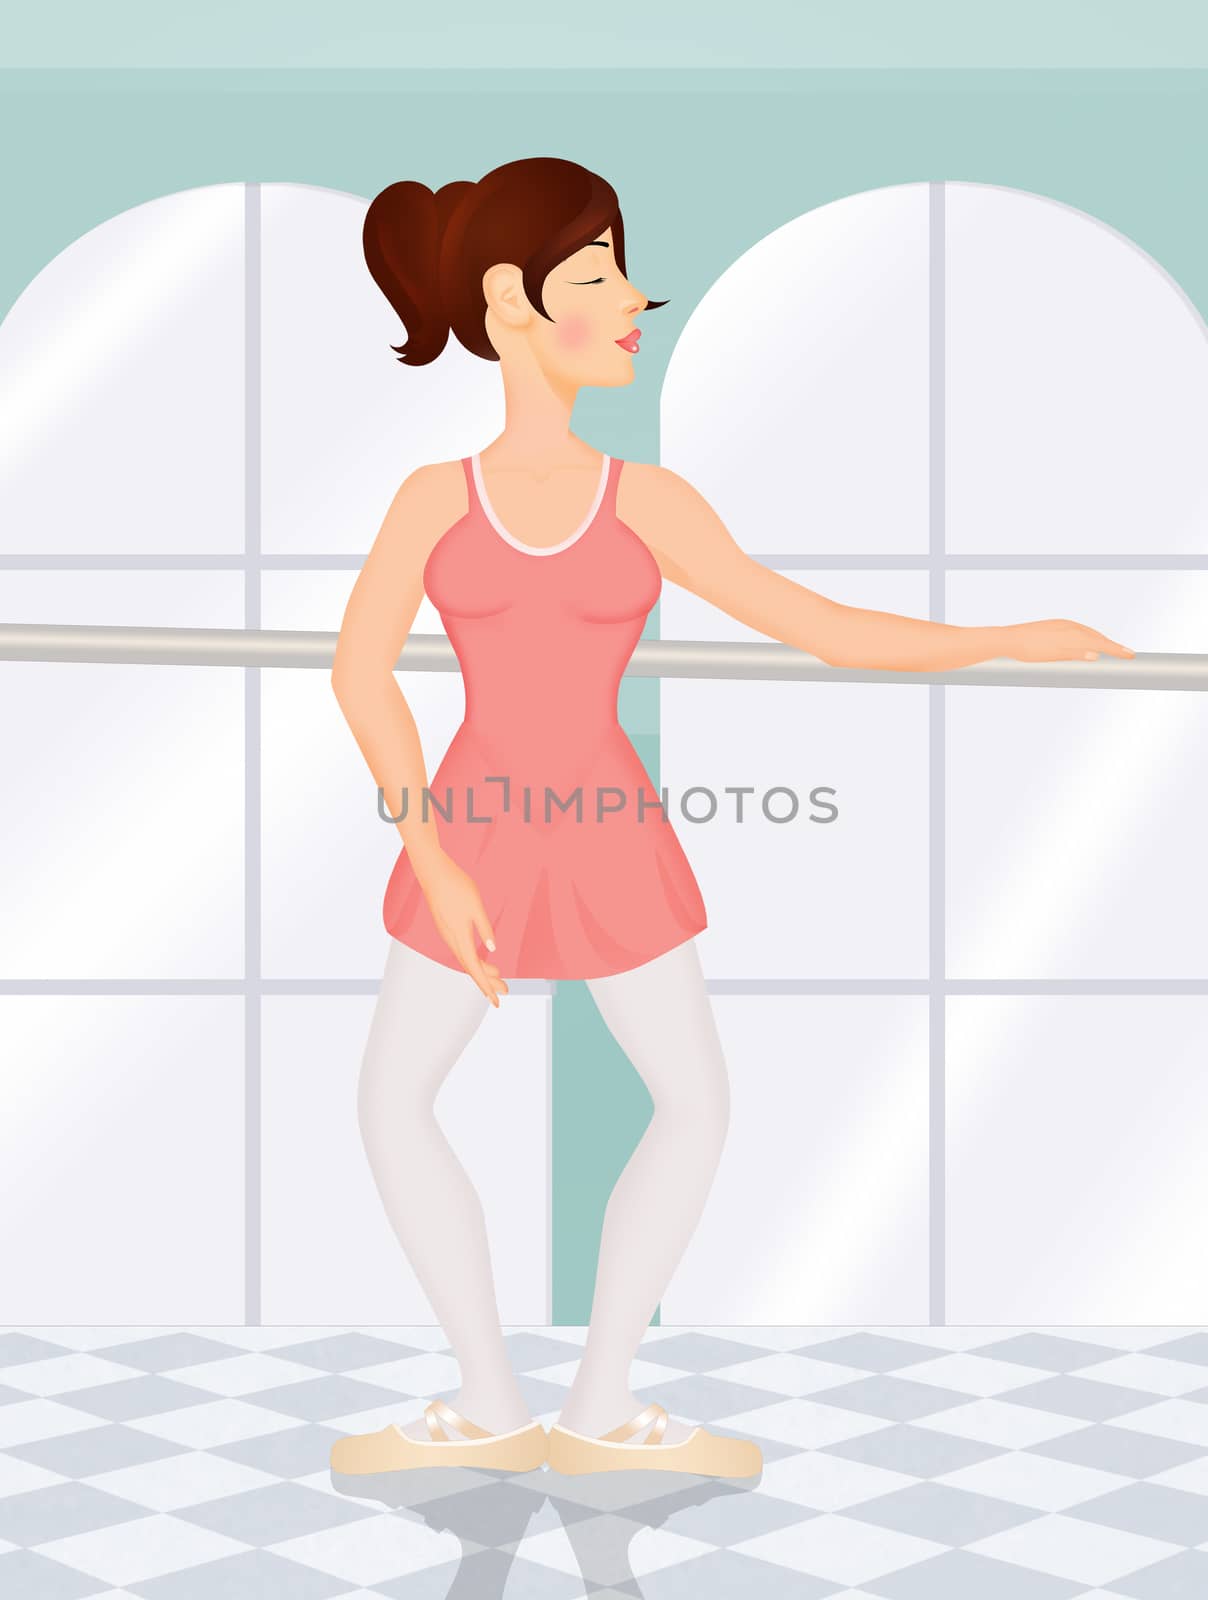 illustration of girl demi plie position